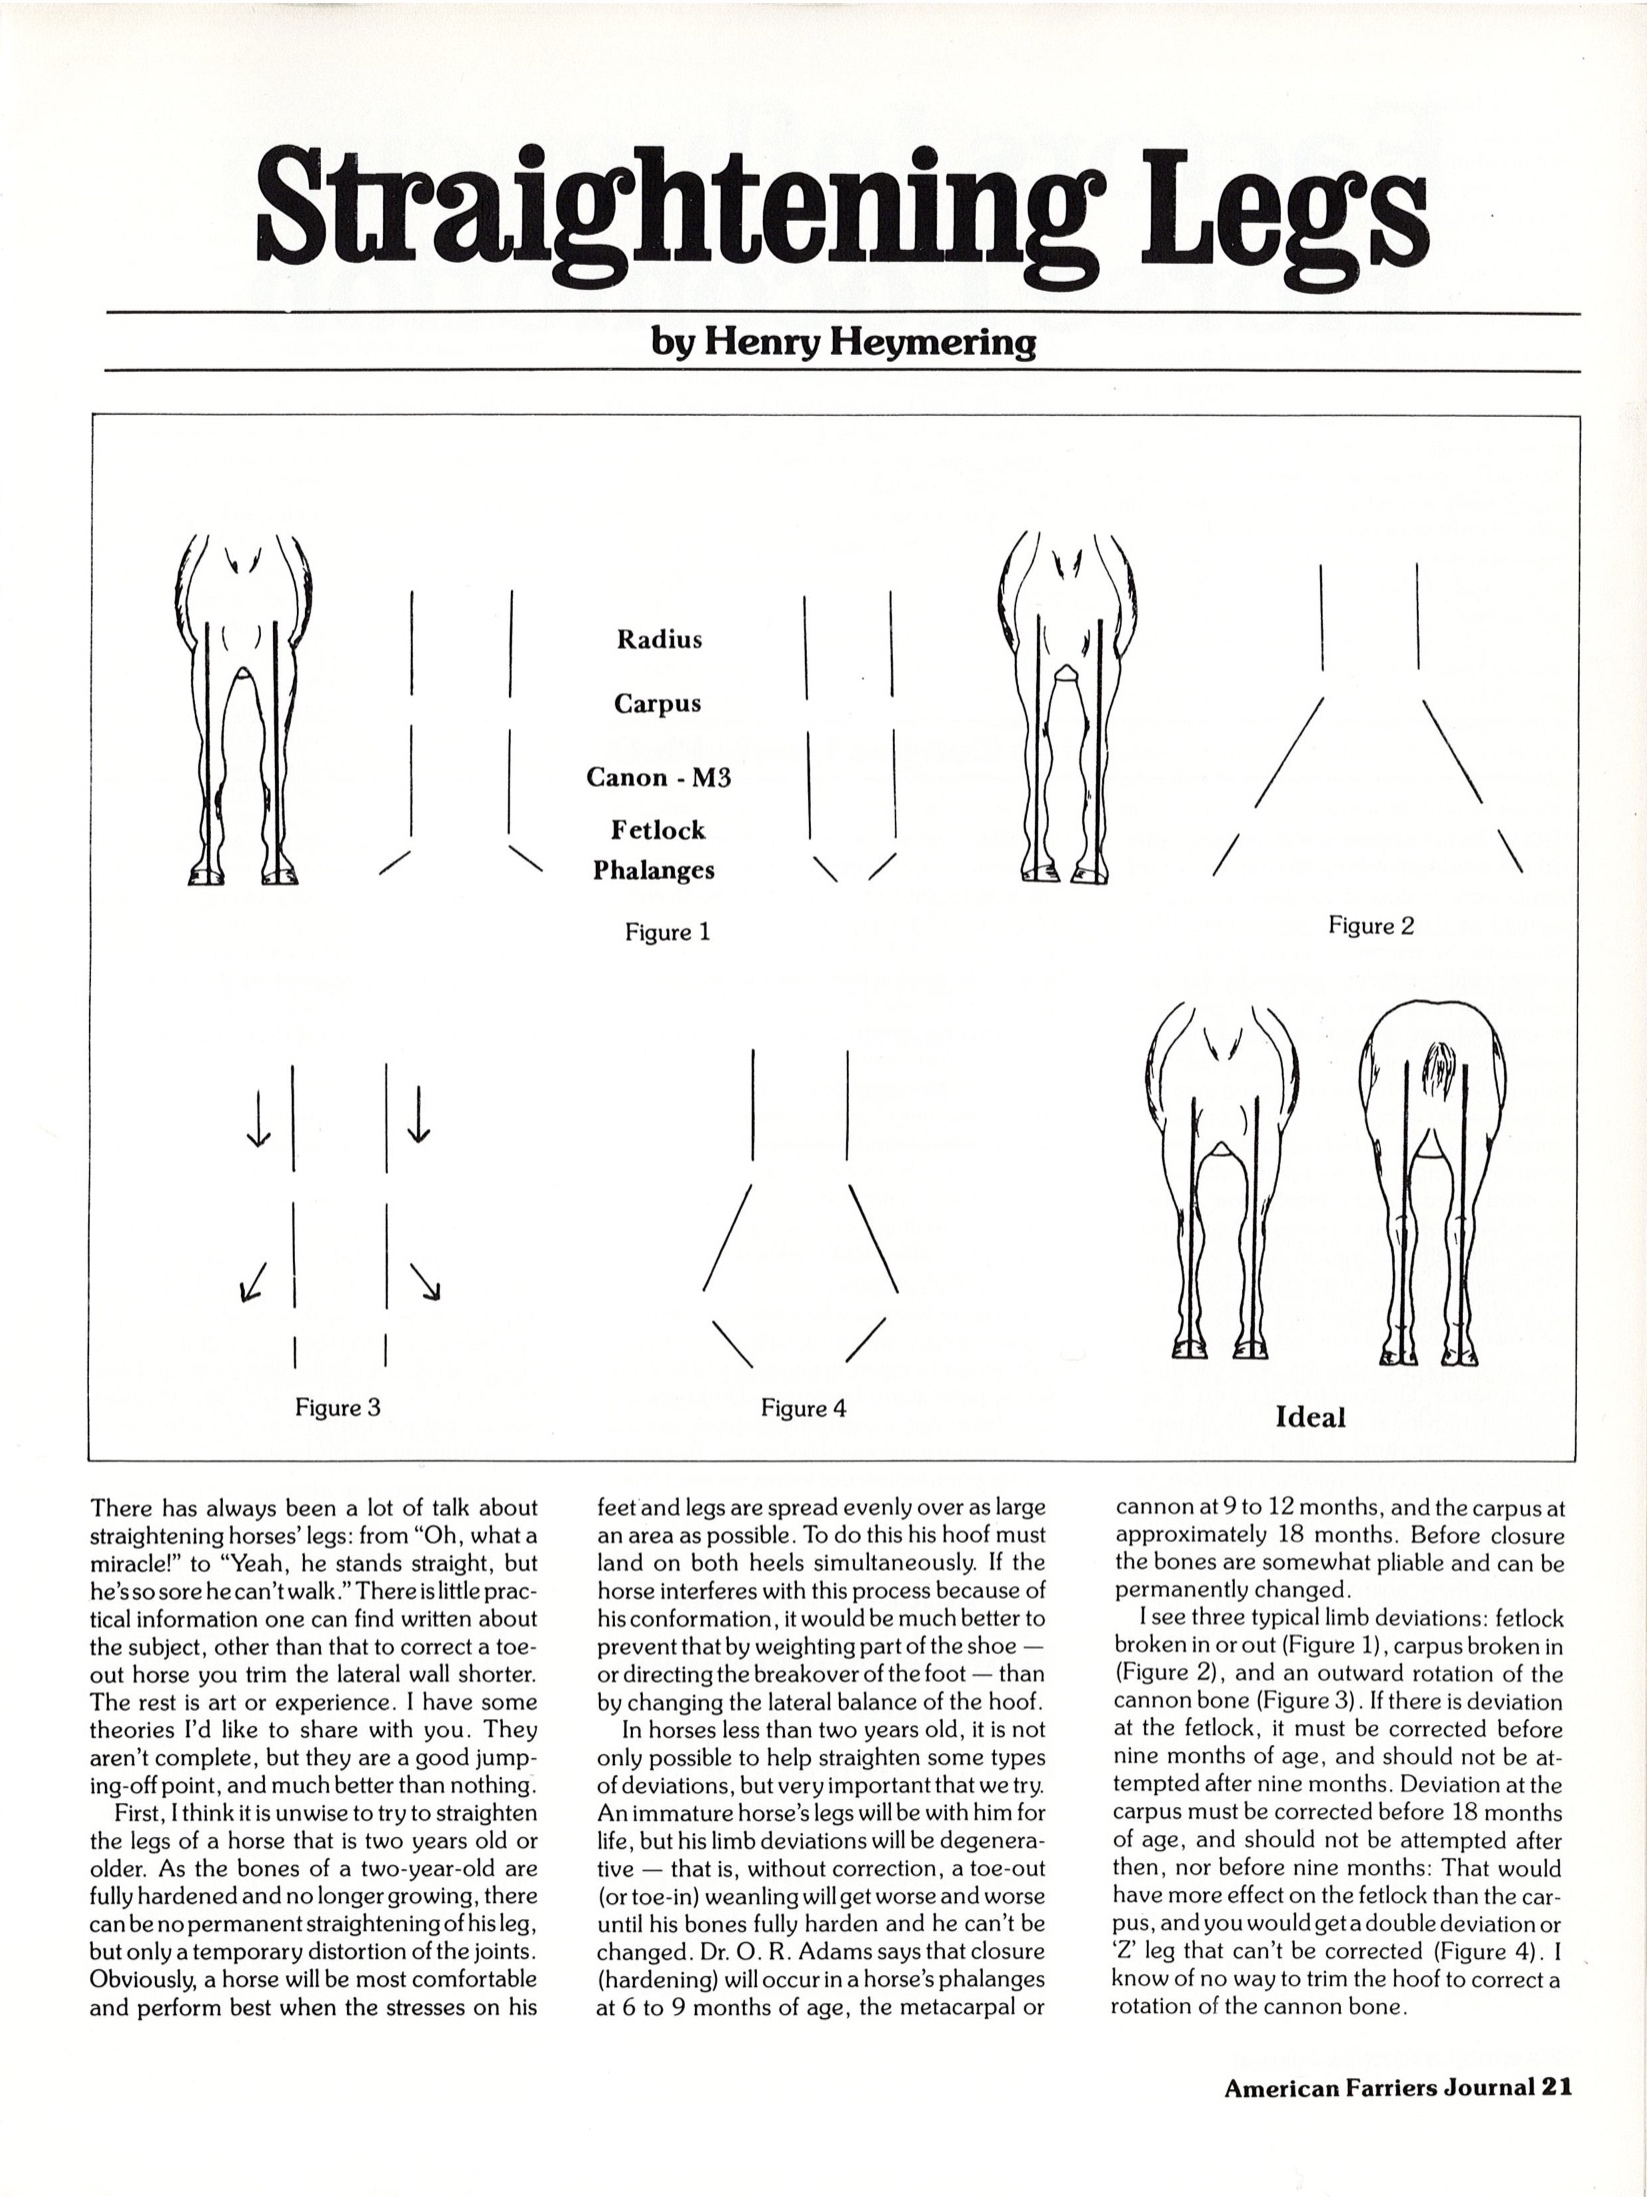 Straightening Legs by Henry Heymering